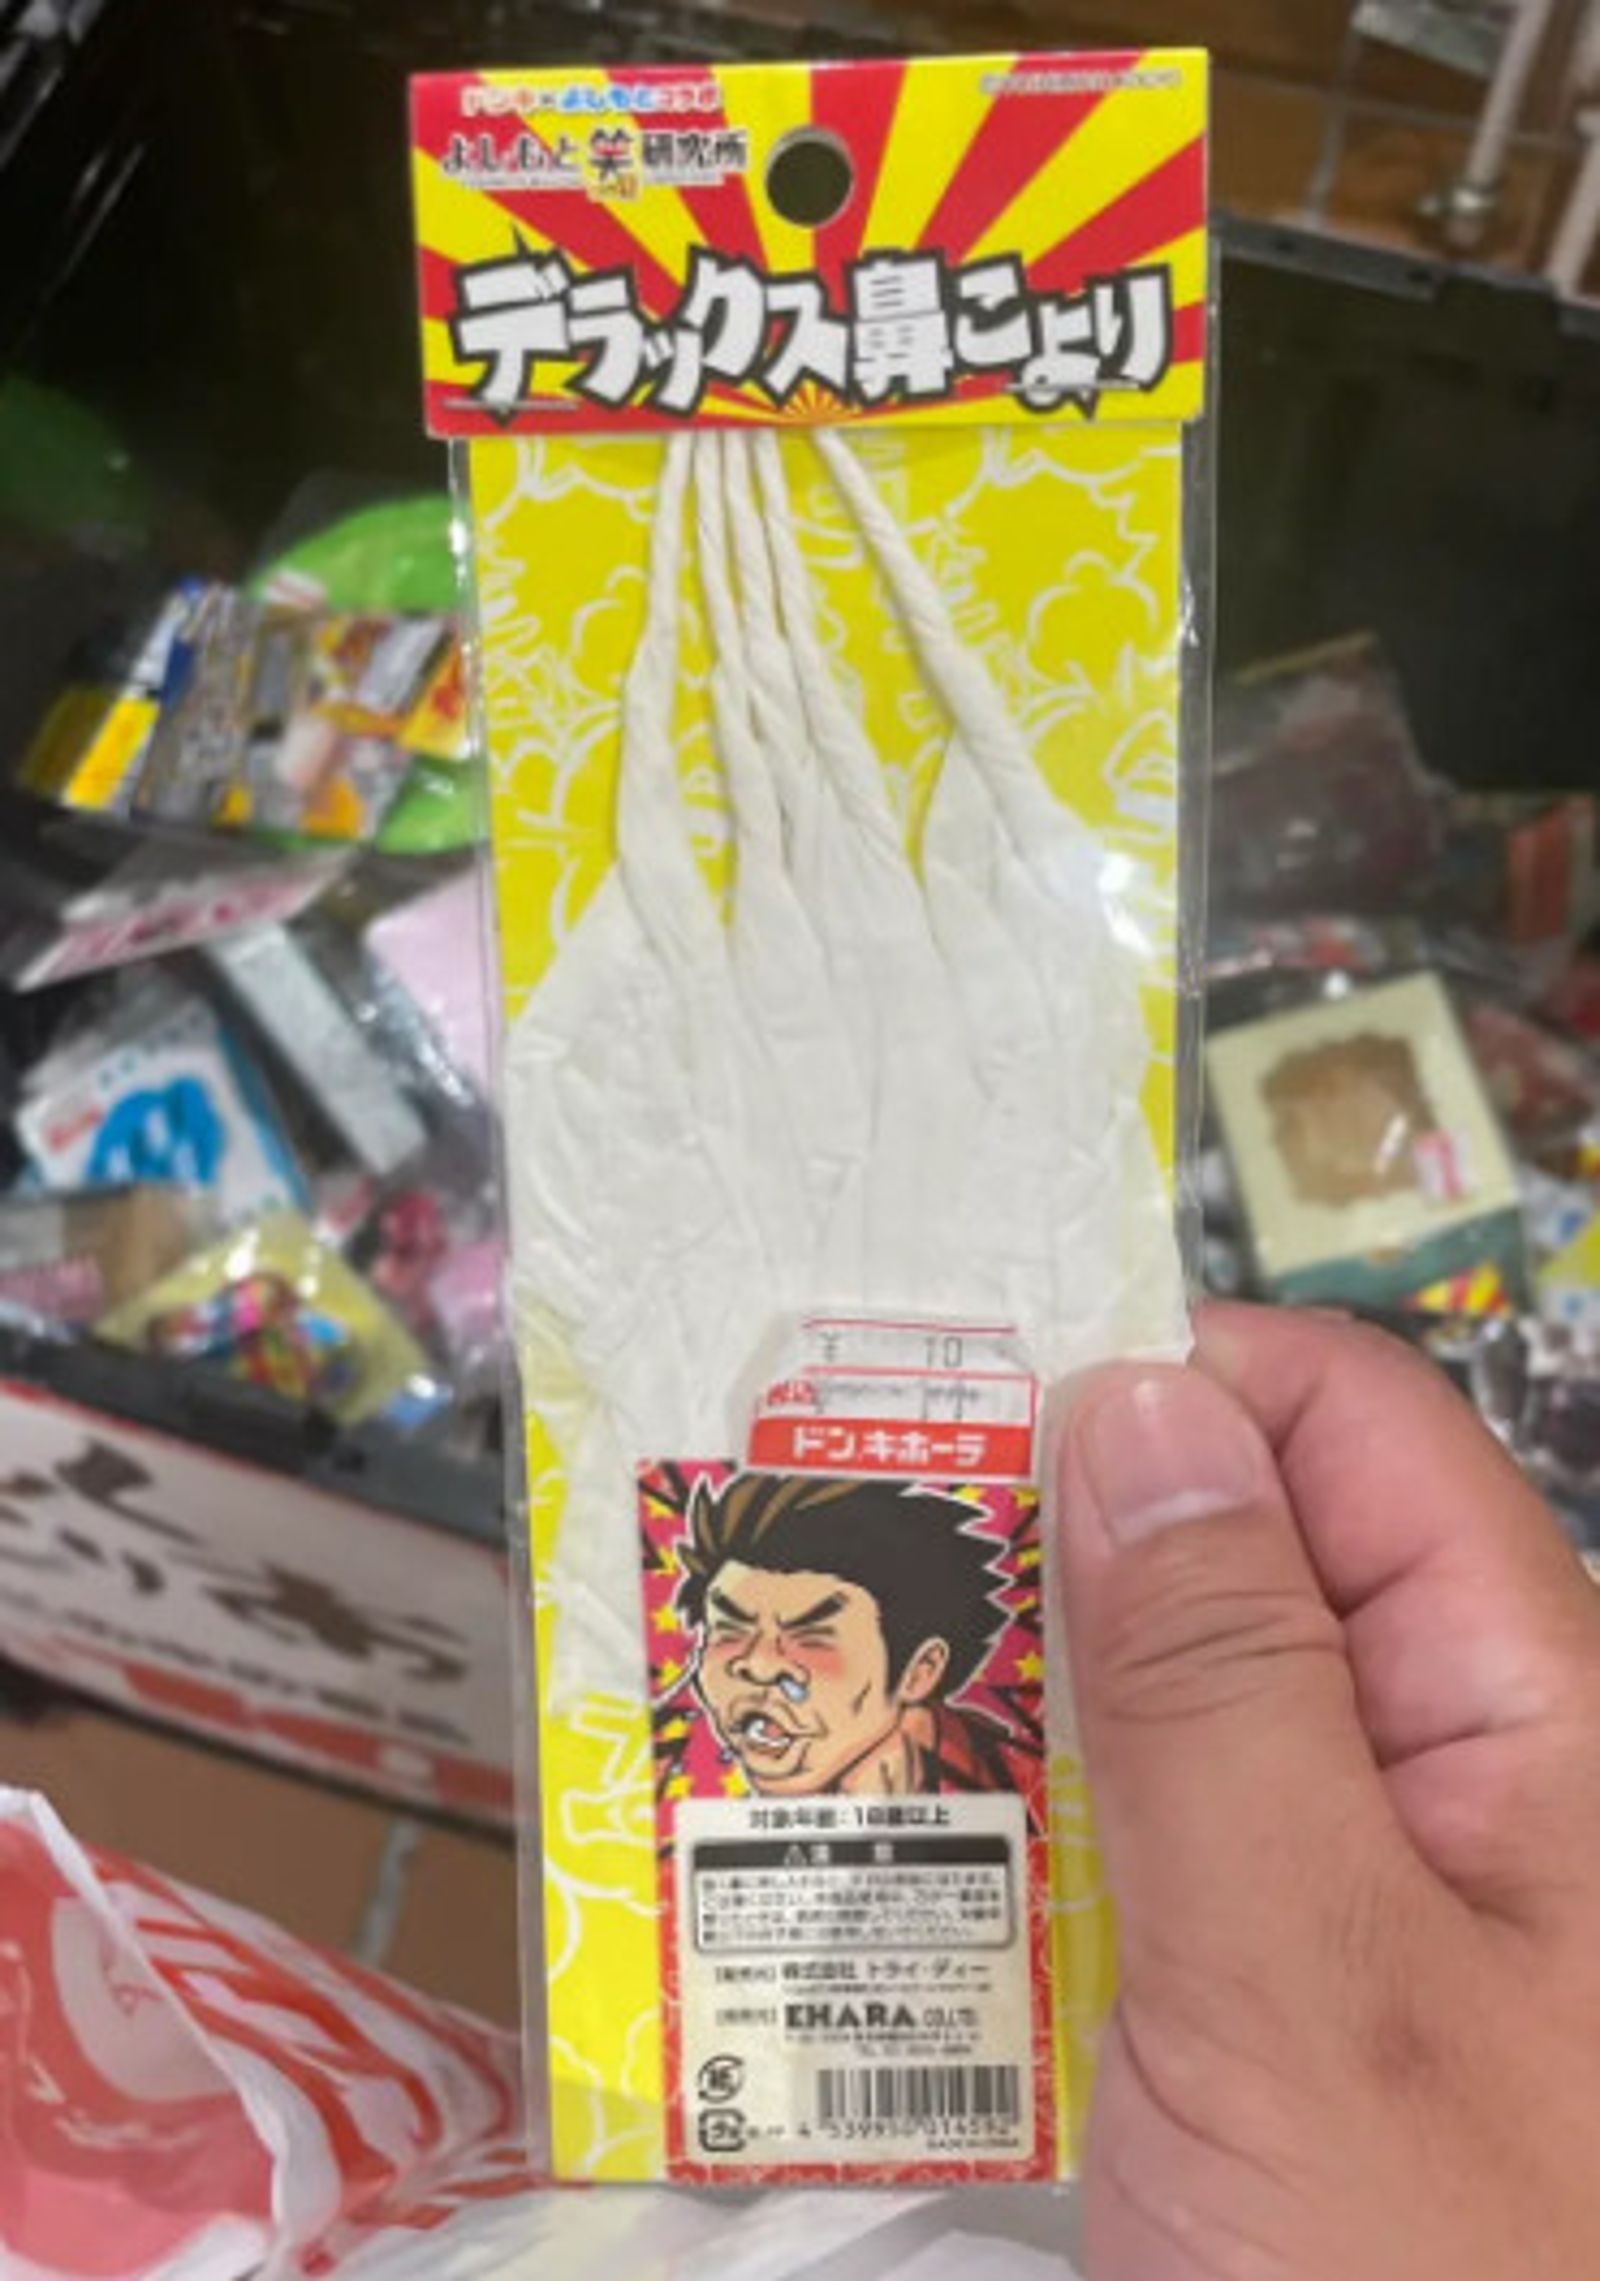 網友發現店內居然販售捲成細長形狀的衛生紙，用途似乎是用來控制打噴嚏的力道。（翻攝臉書社團「小廢物俱樂部」）